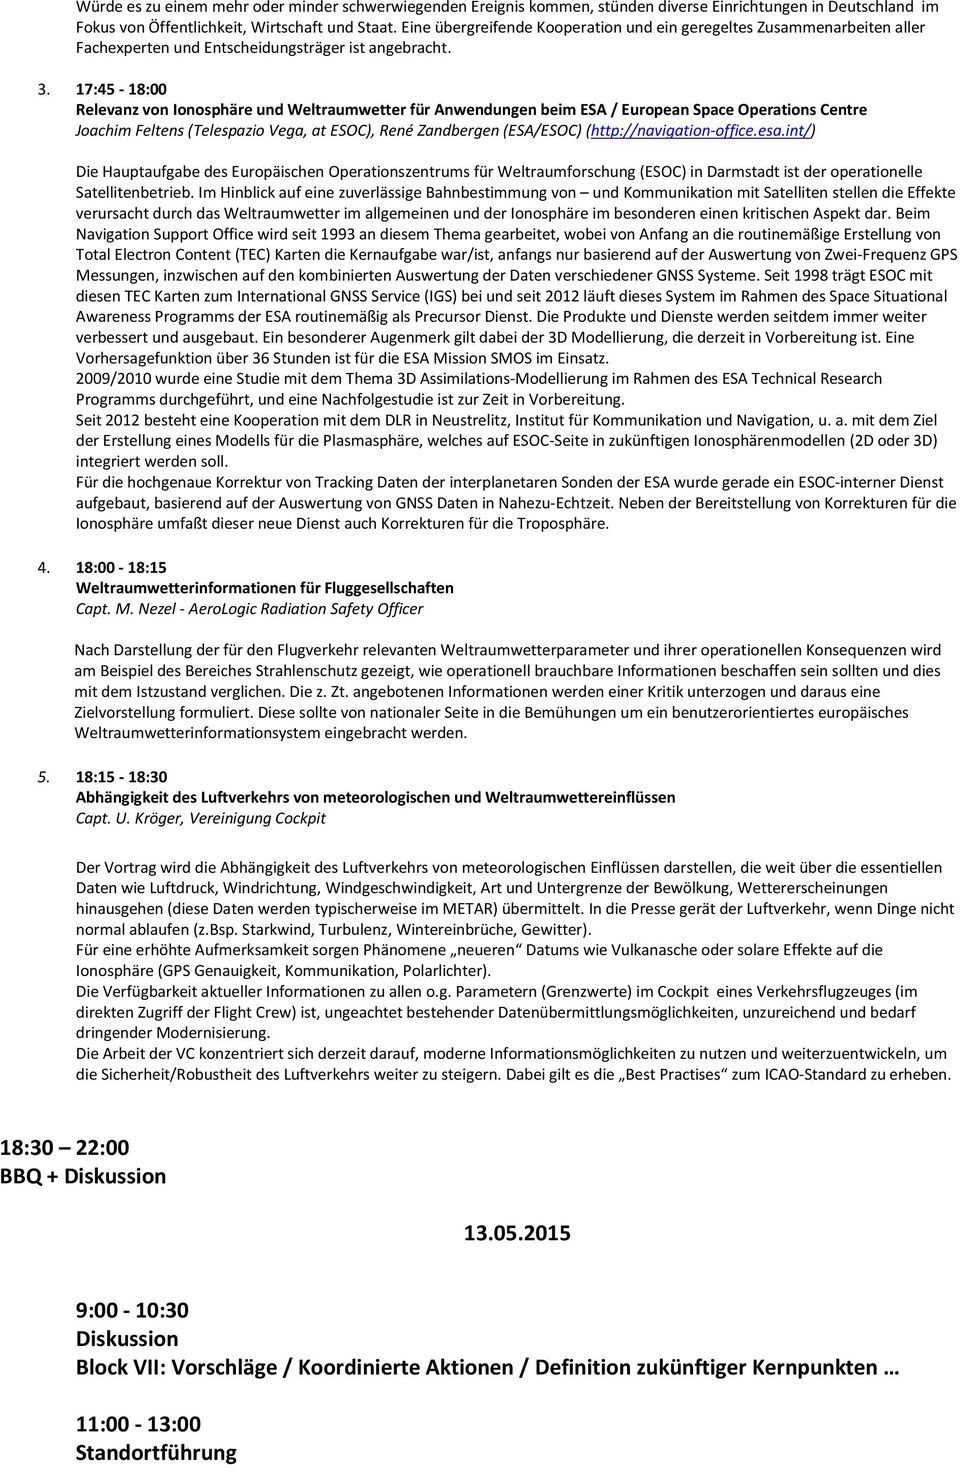 17:45-18:00 Relevanz von Ionosphäre und Weltraumwetter für Anwendungen beim ESA / European Space Operations Centre Joachim Feltens (Telespazio Vega, at ESOC), René Zandbergen (ESA/ESOC)